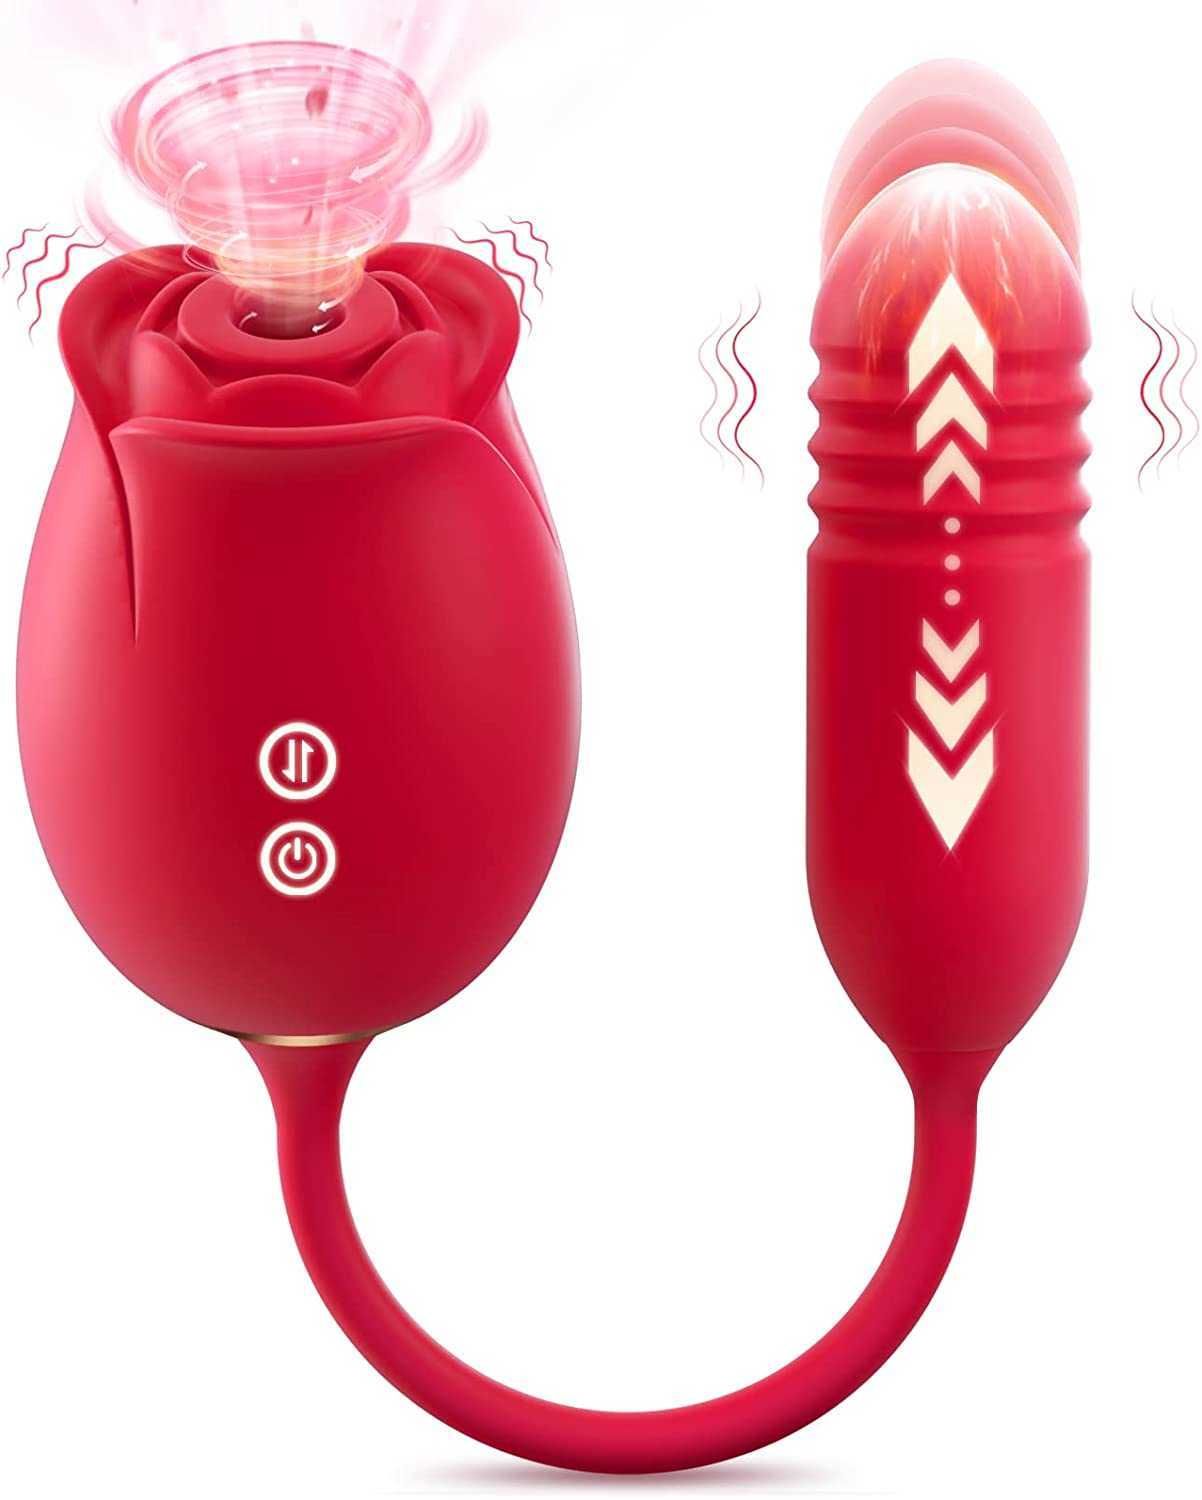 Alternativ: Rose Vibrator Toy;